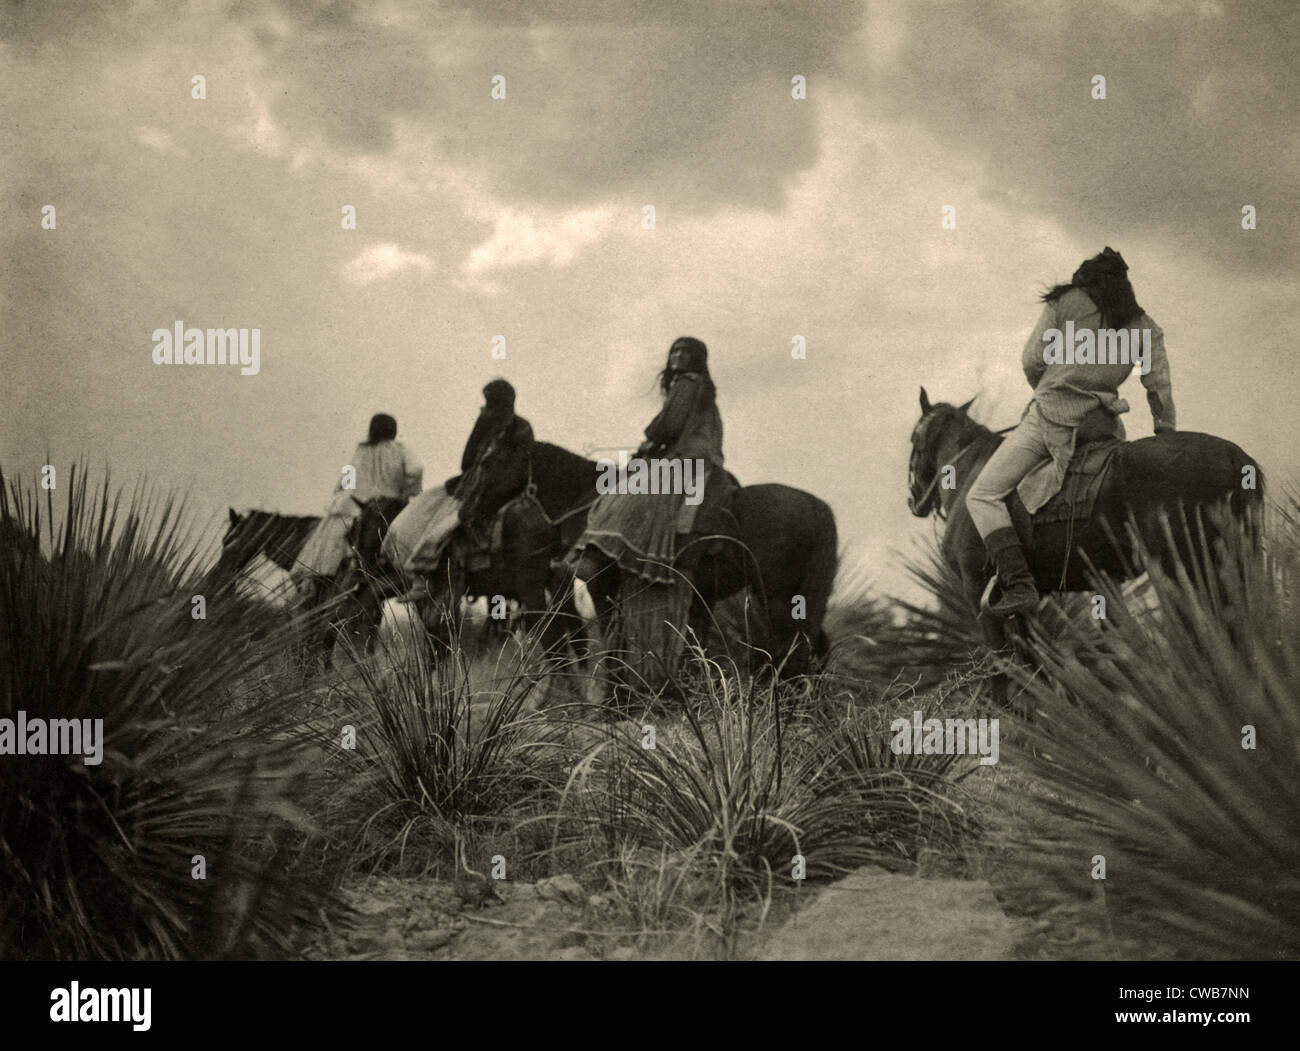 Apachen. Vor dem Sturm - vier Apache auf dem Pferderücken zu Pferd unter Gewitterwolken. Foto von Curtis, 1906 Stockfoto